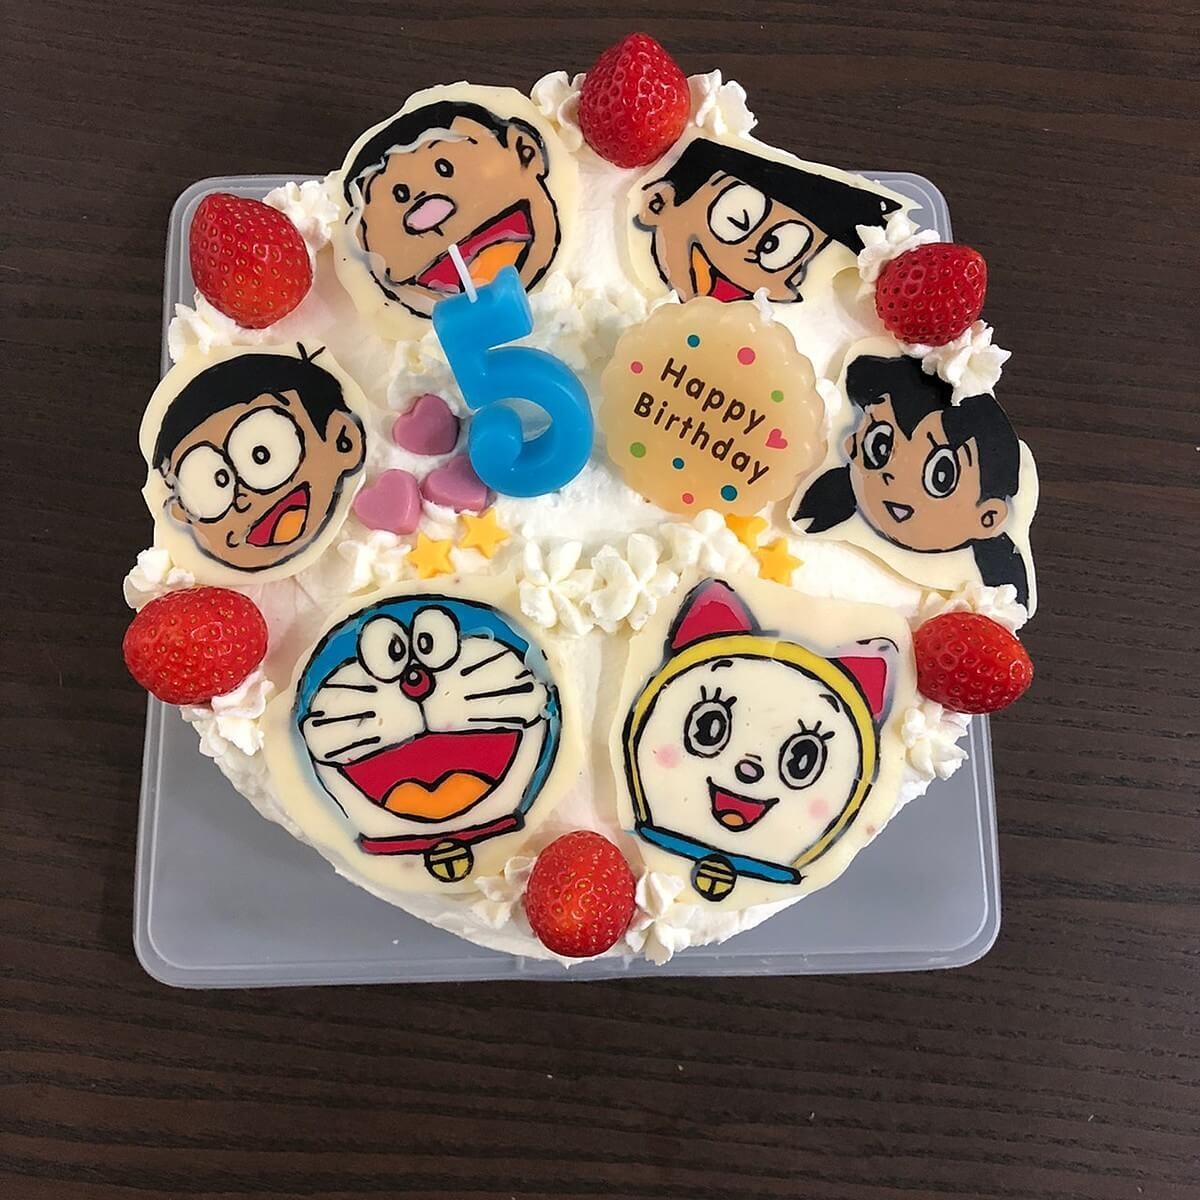 チョコペンで作る誕生日ケーキ 大好きなキャラクターを子どもと一緒に描いてみよう ヨムーノ